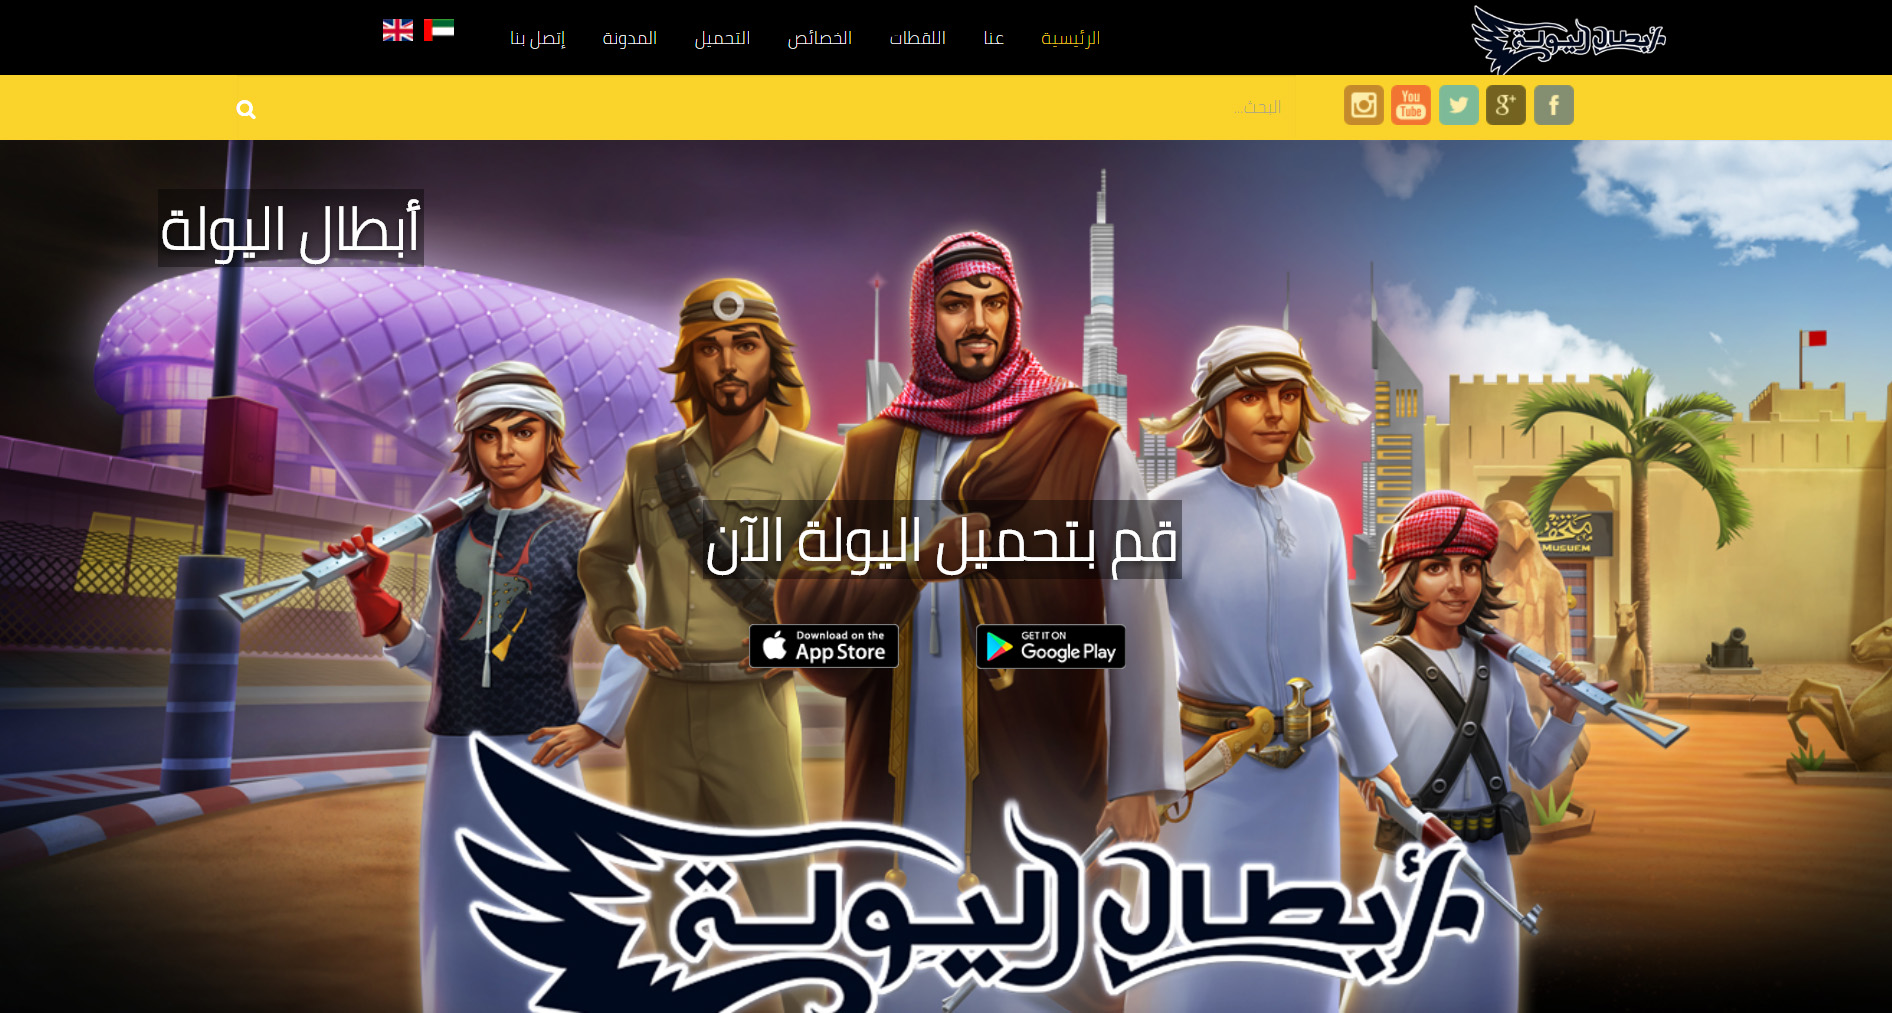 تصميم موقع الكتروني خاص بلعبة أبطال اليولة فى المملكة العربية السعودية